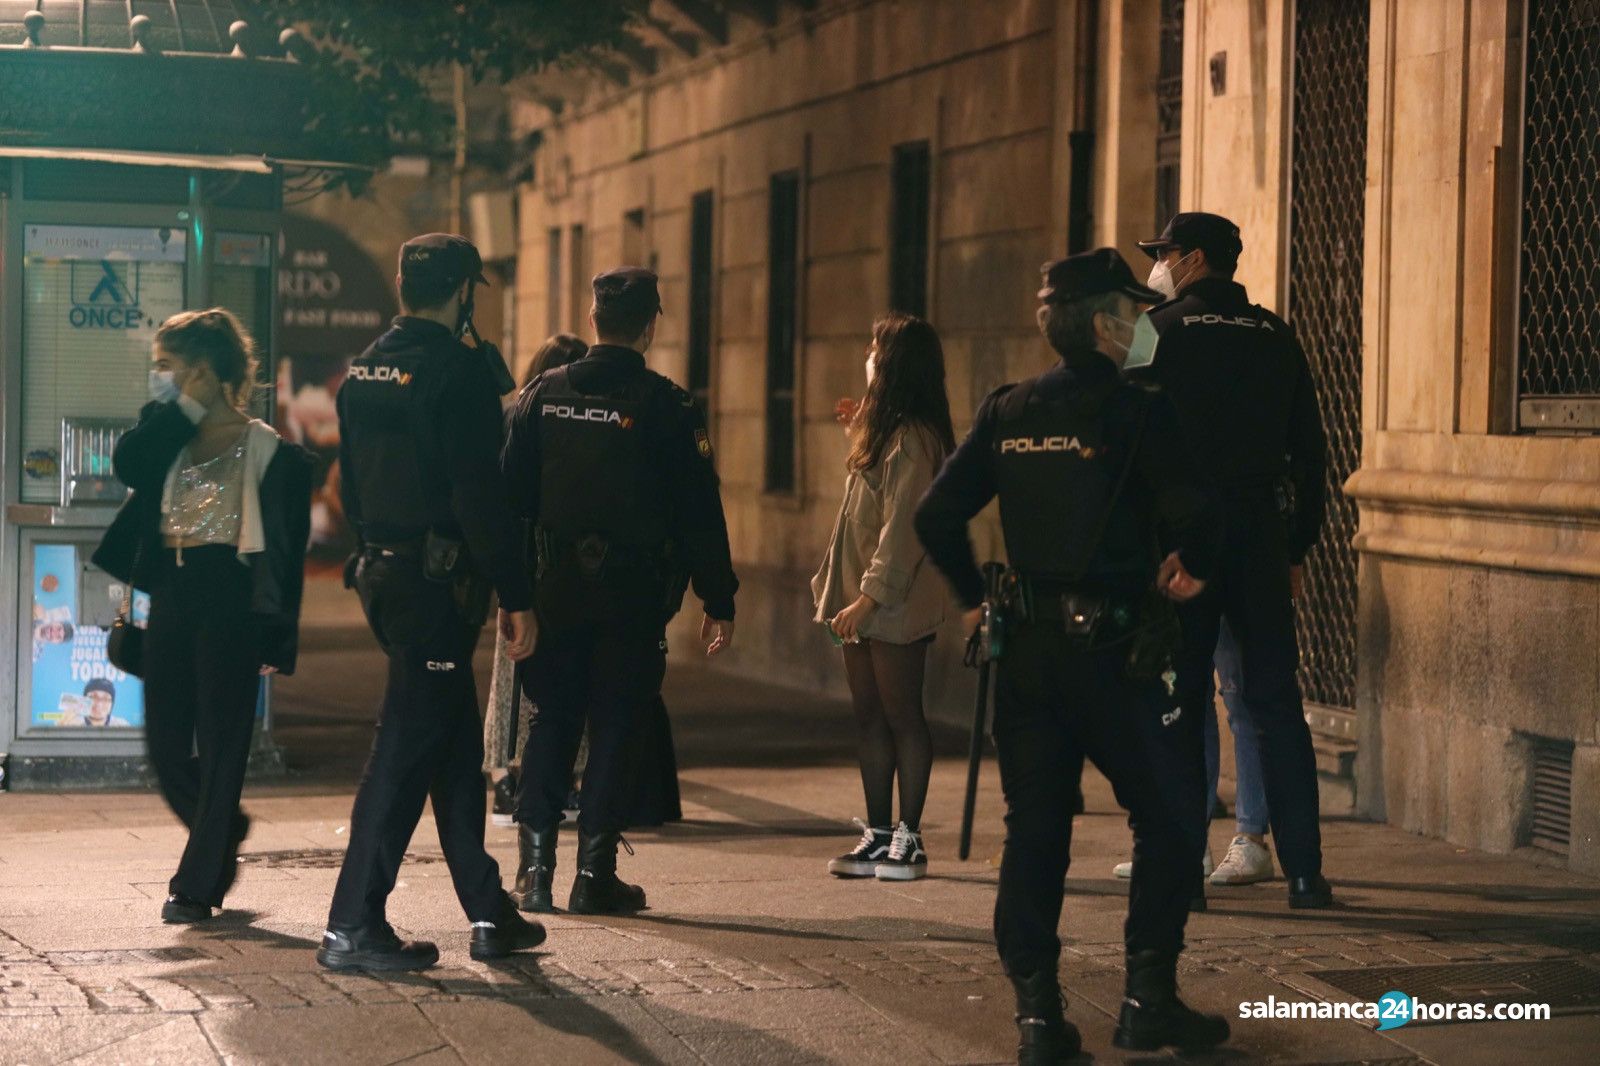  Policia nacional noche confinamiento Image 2020 10 18 at 00.03.36 